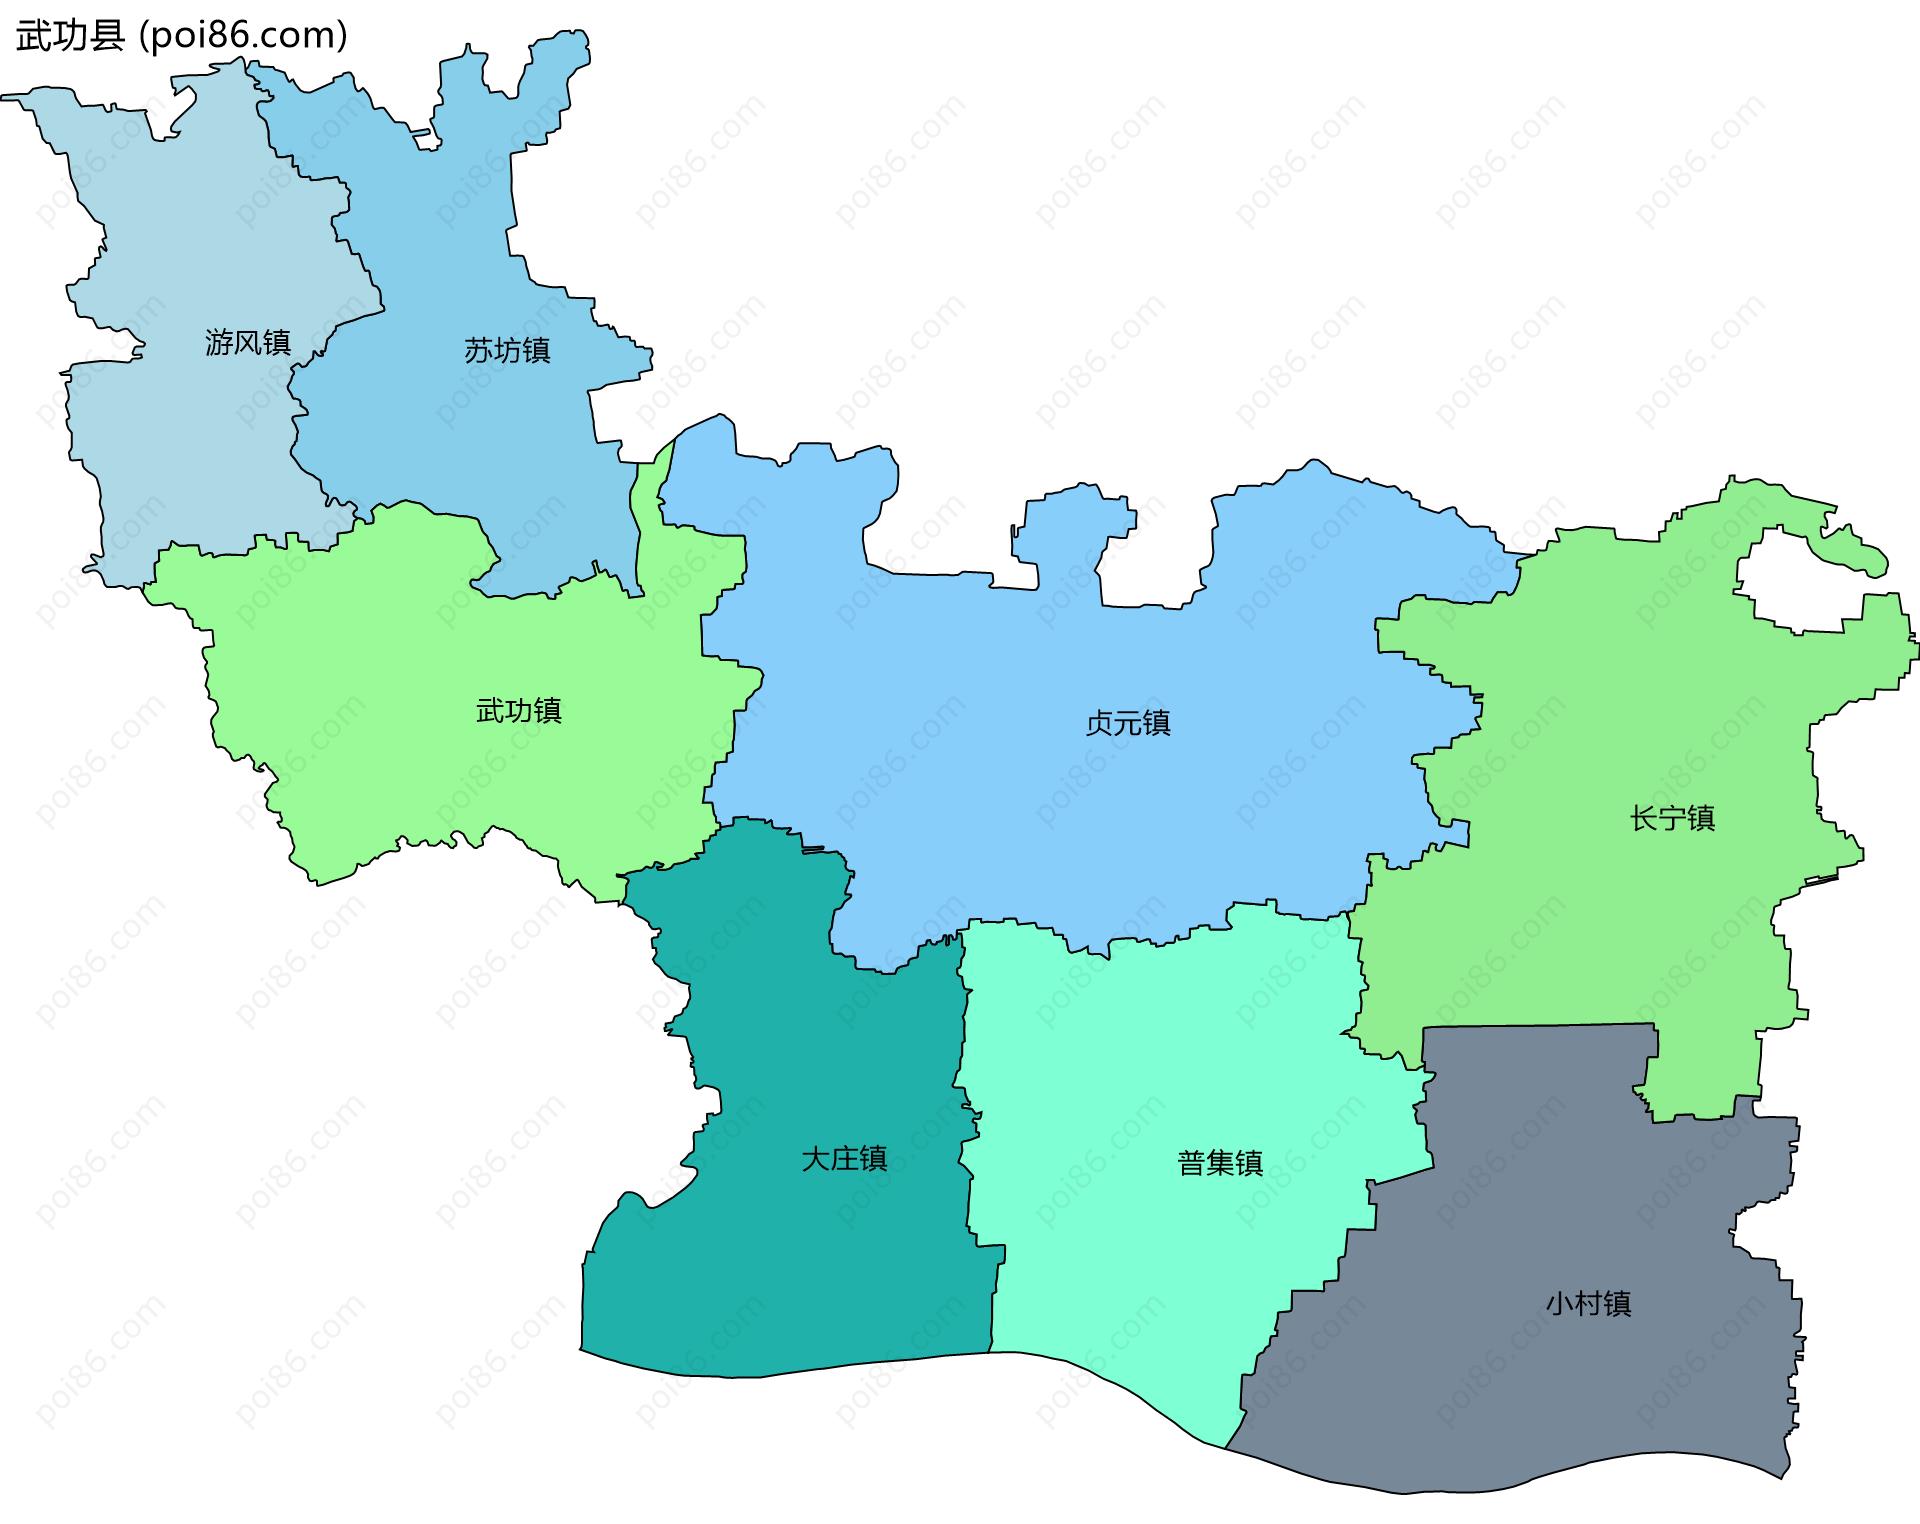 武功县边界地图